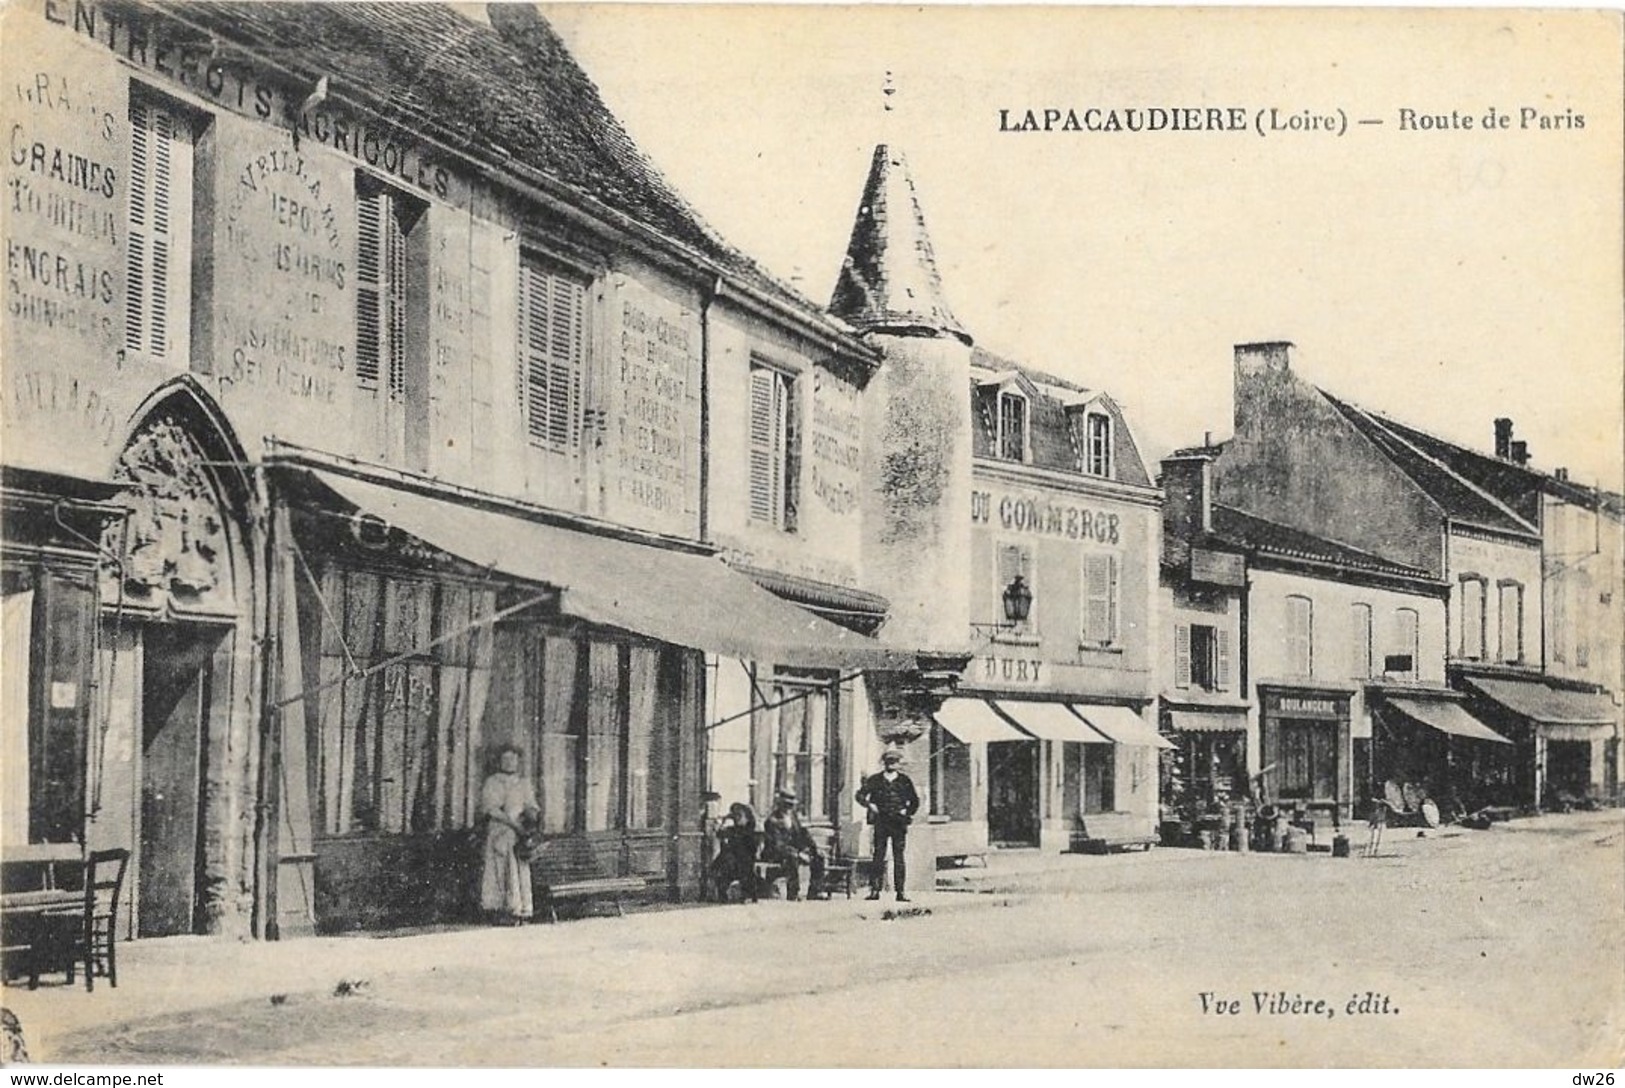 Lapacaudière (La Pacaudière, Loire) Route De Paris, Hôtel Du Commerce - Edition Vve Vibère - La Pacaudiere